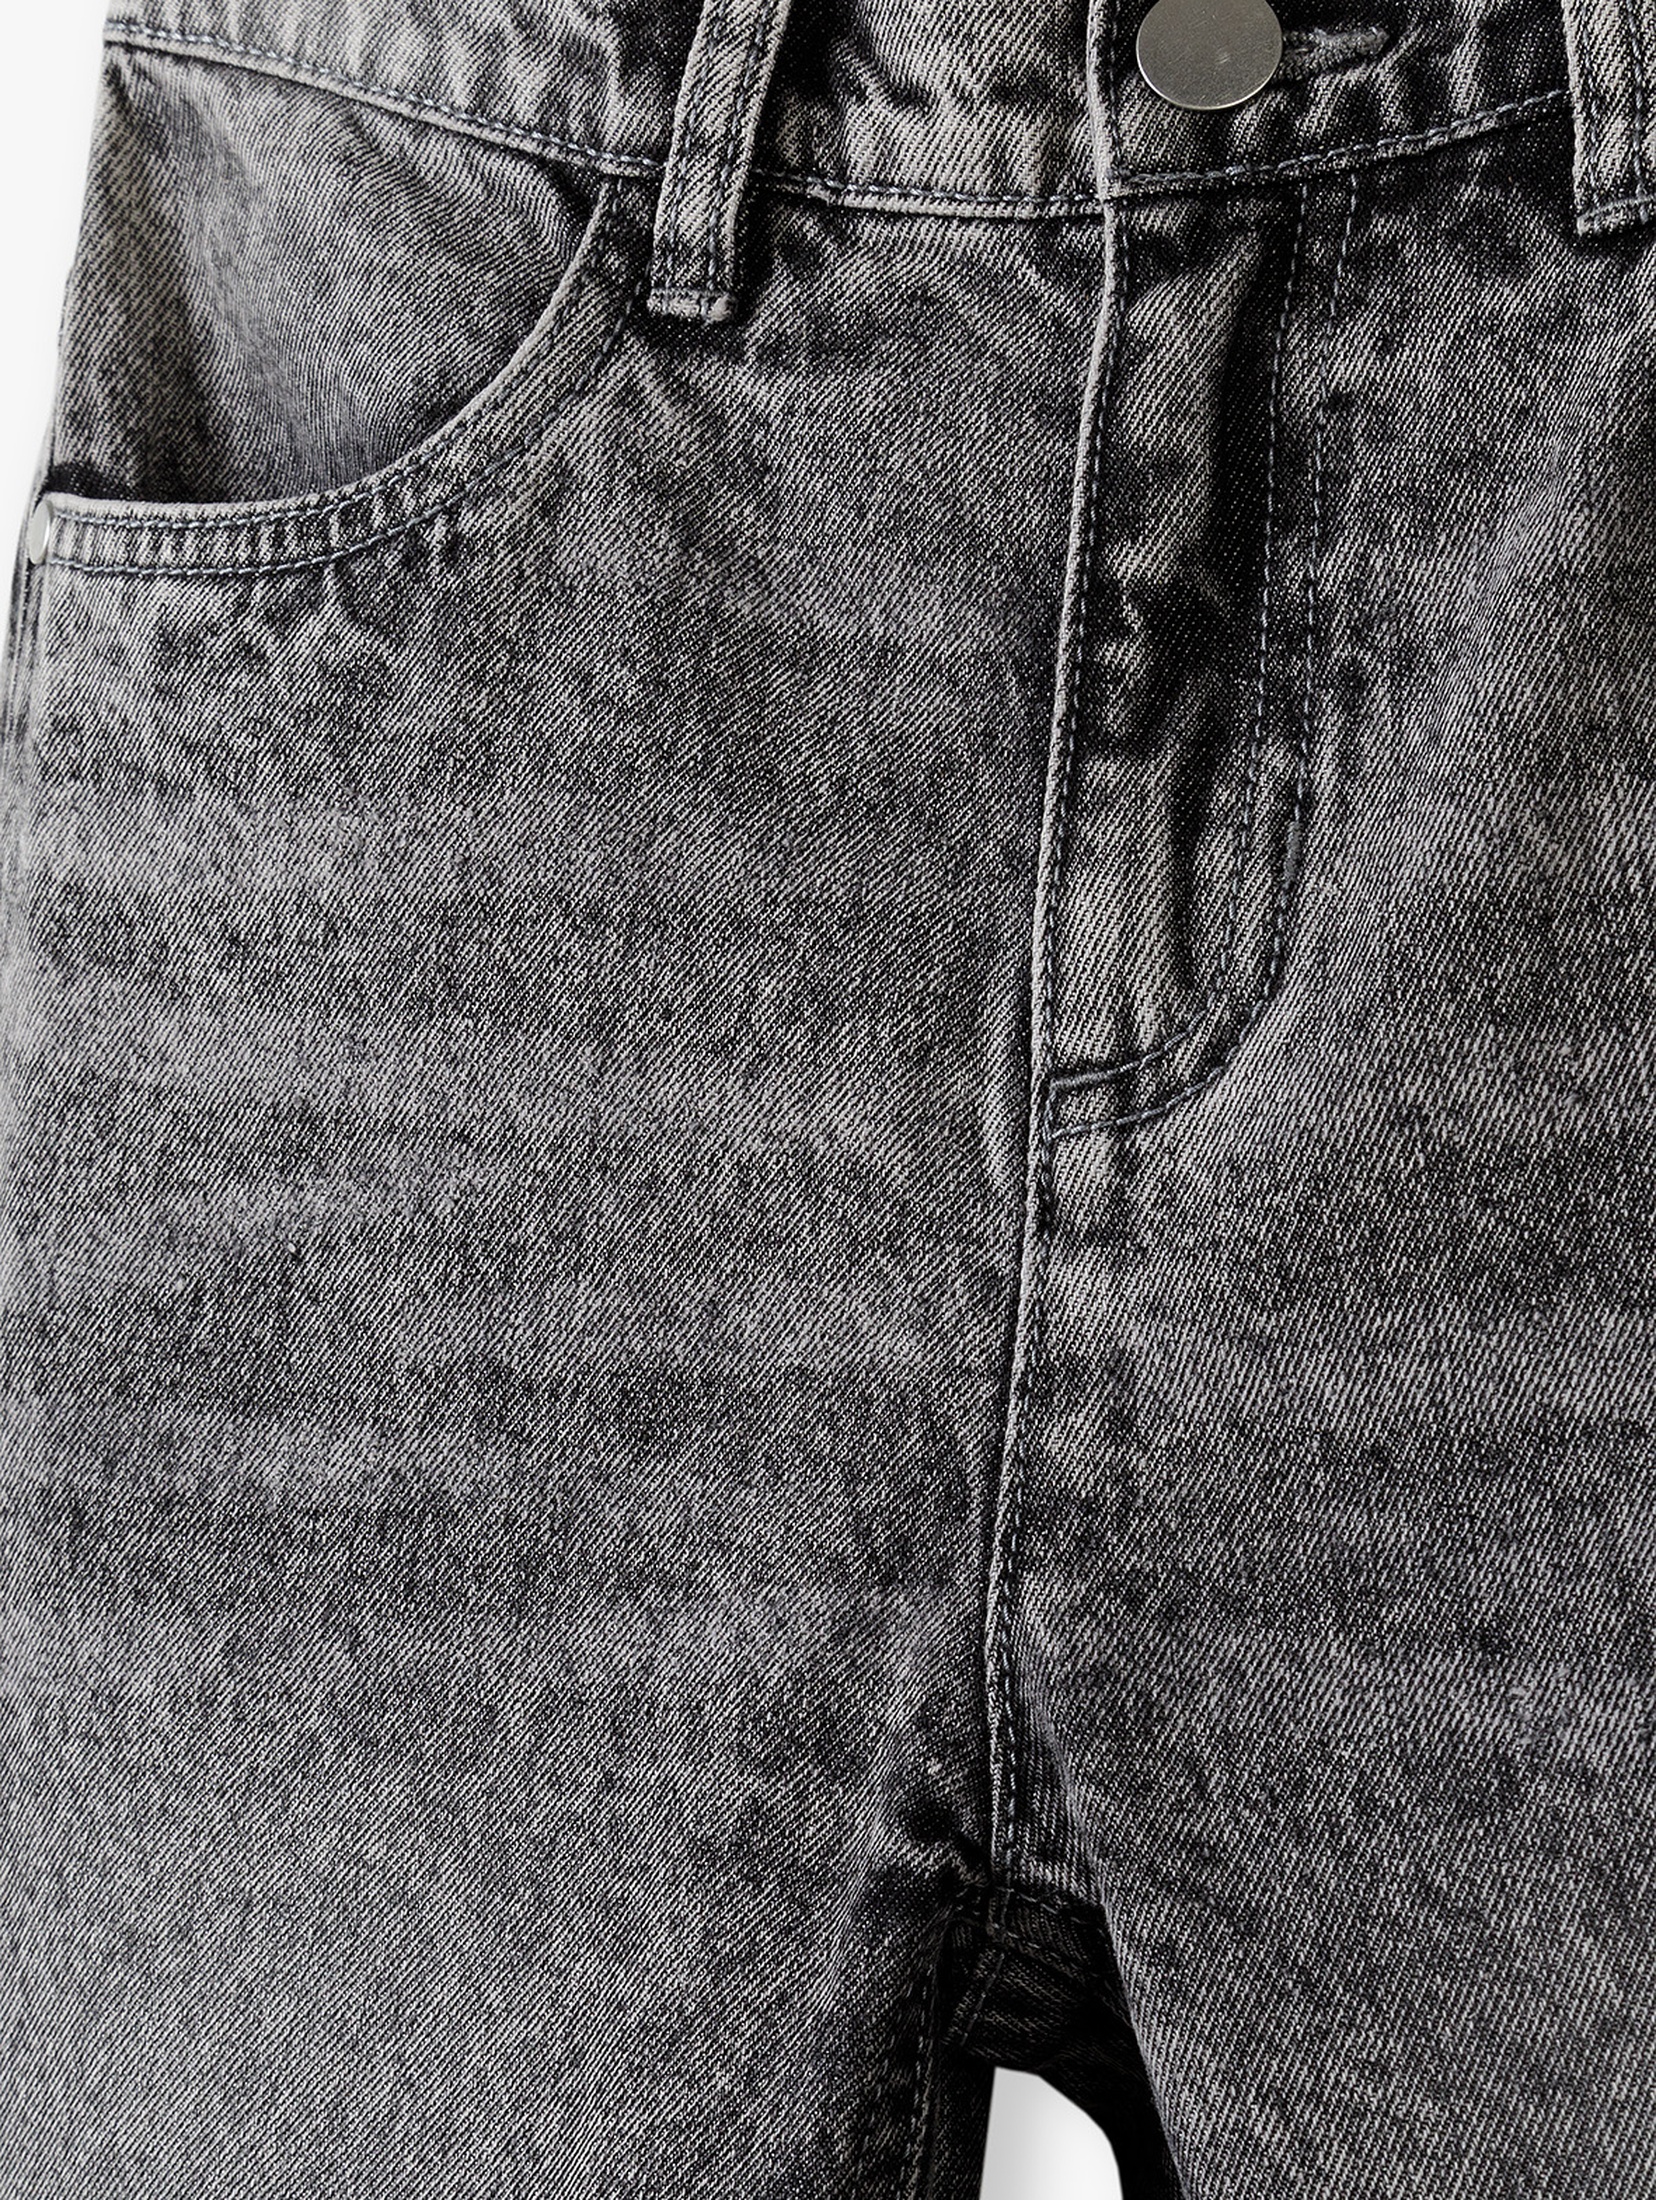 Spodnie jeansowe regular dla chłopca - szare Lincoln&Sharks